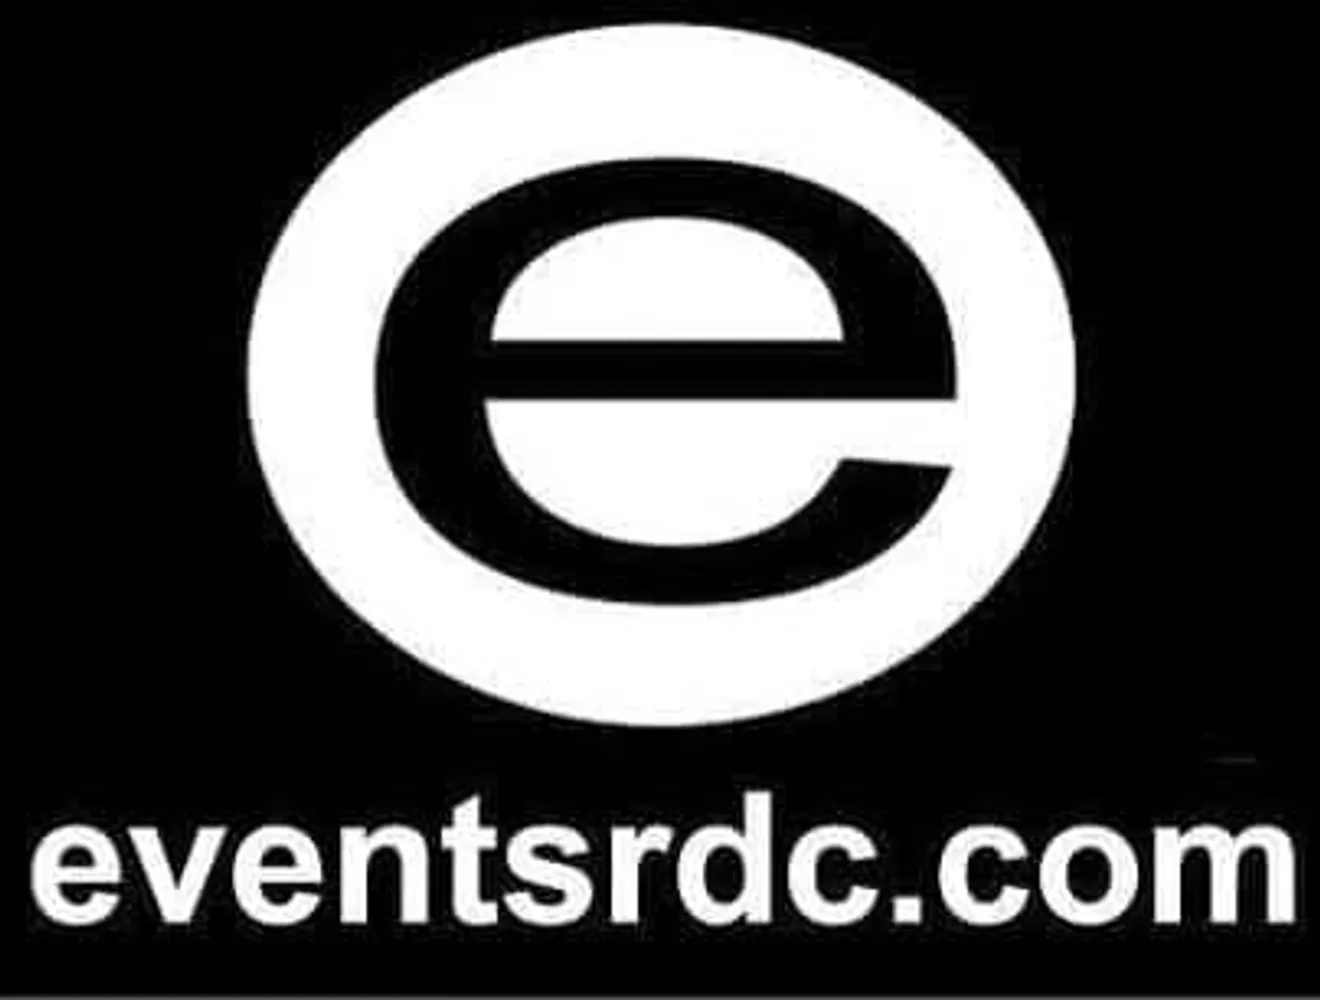 Eventsrdc.com